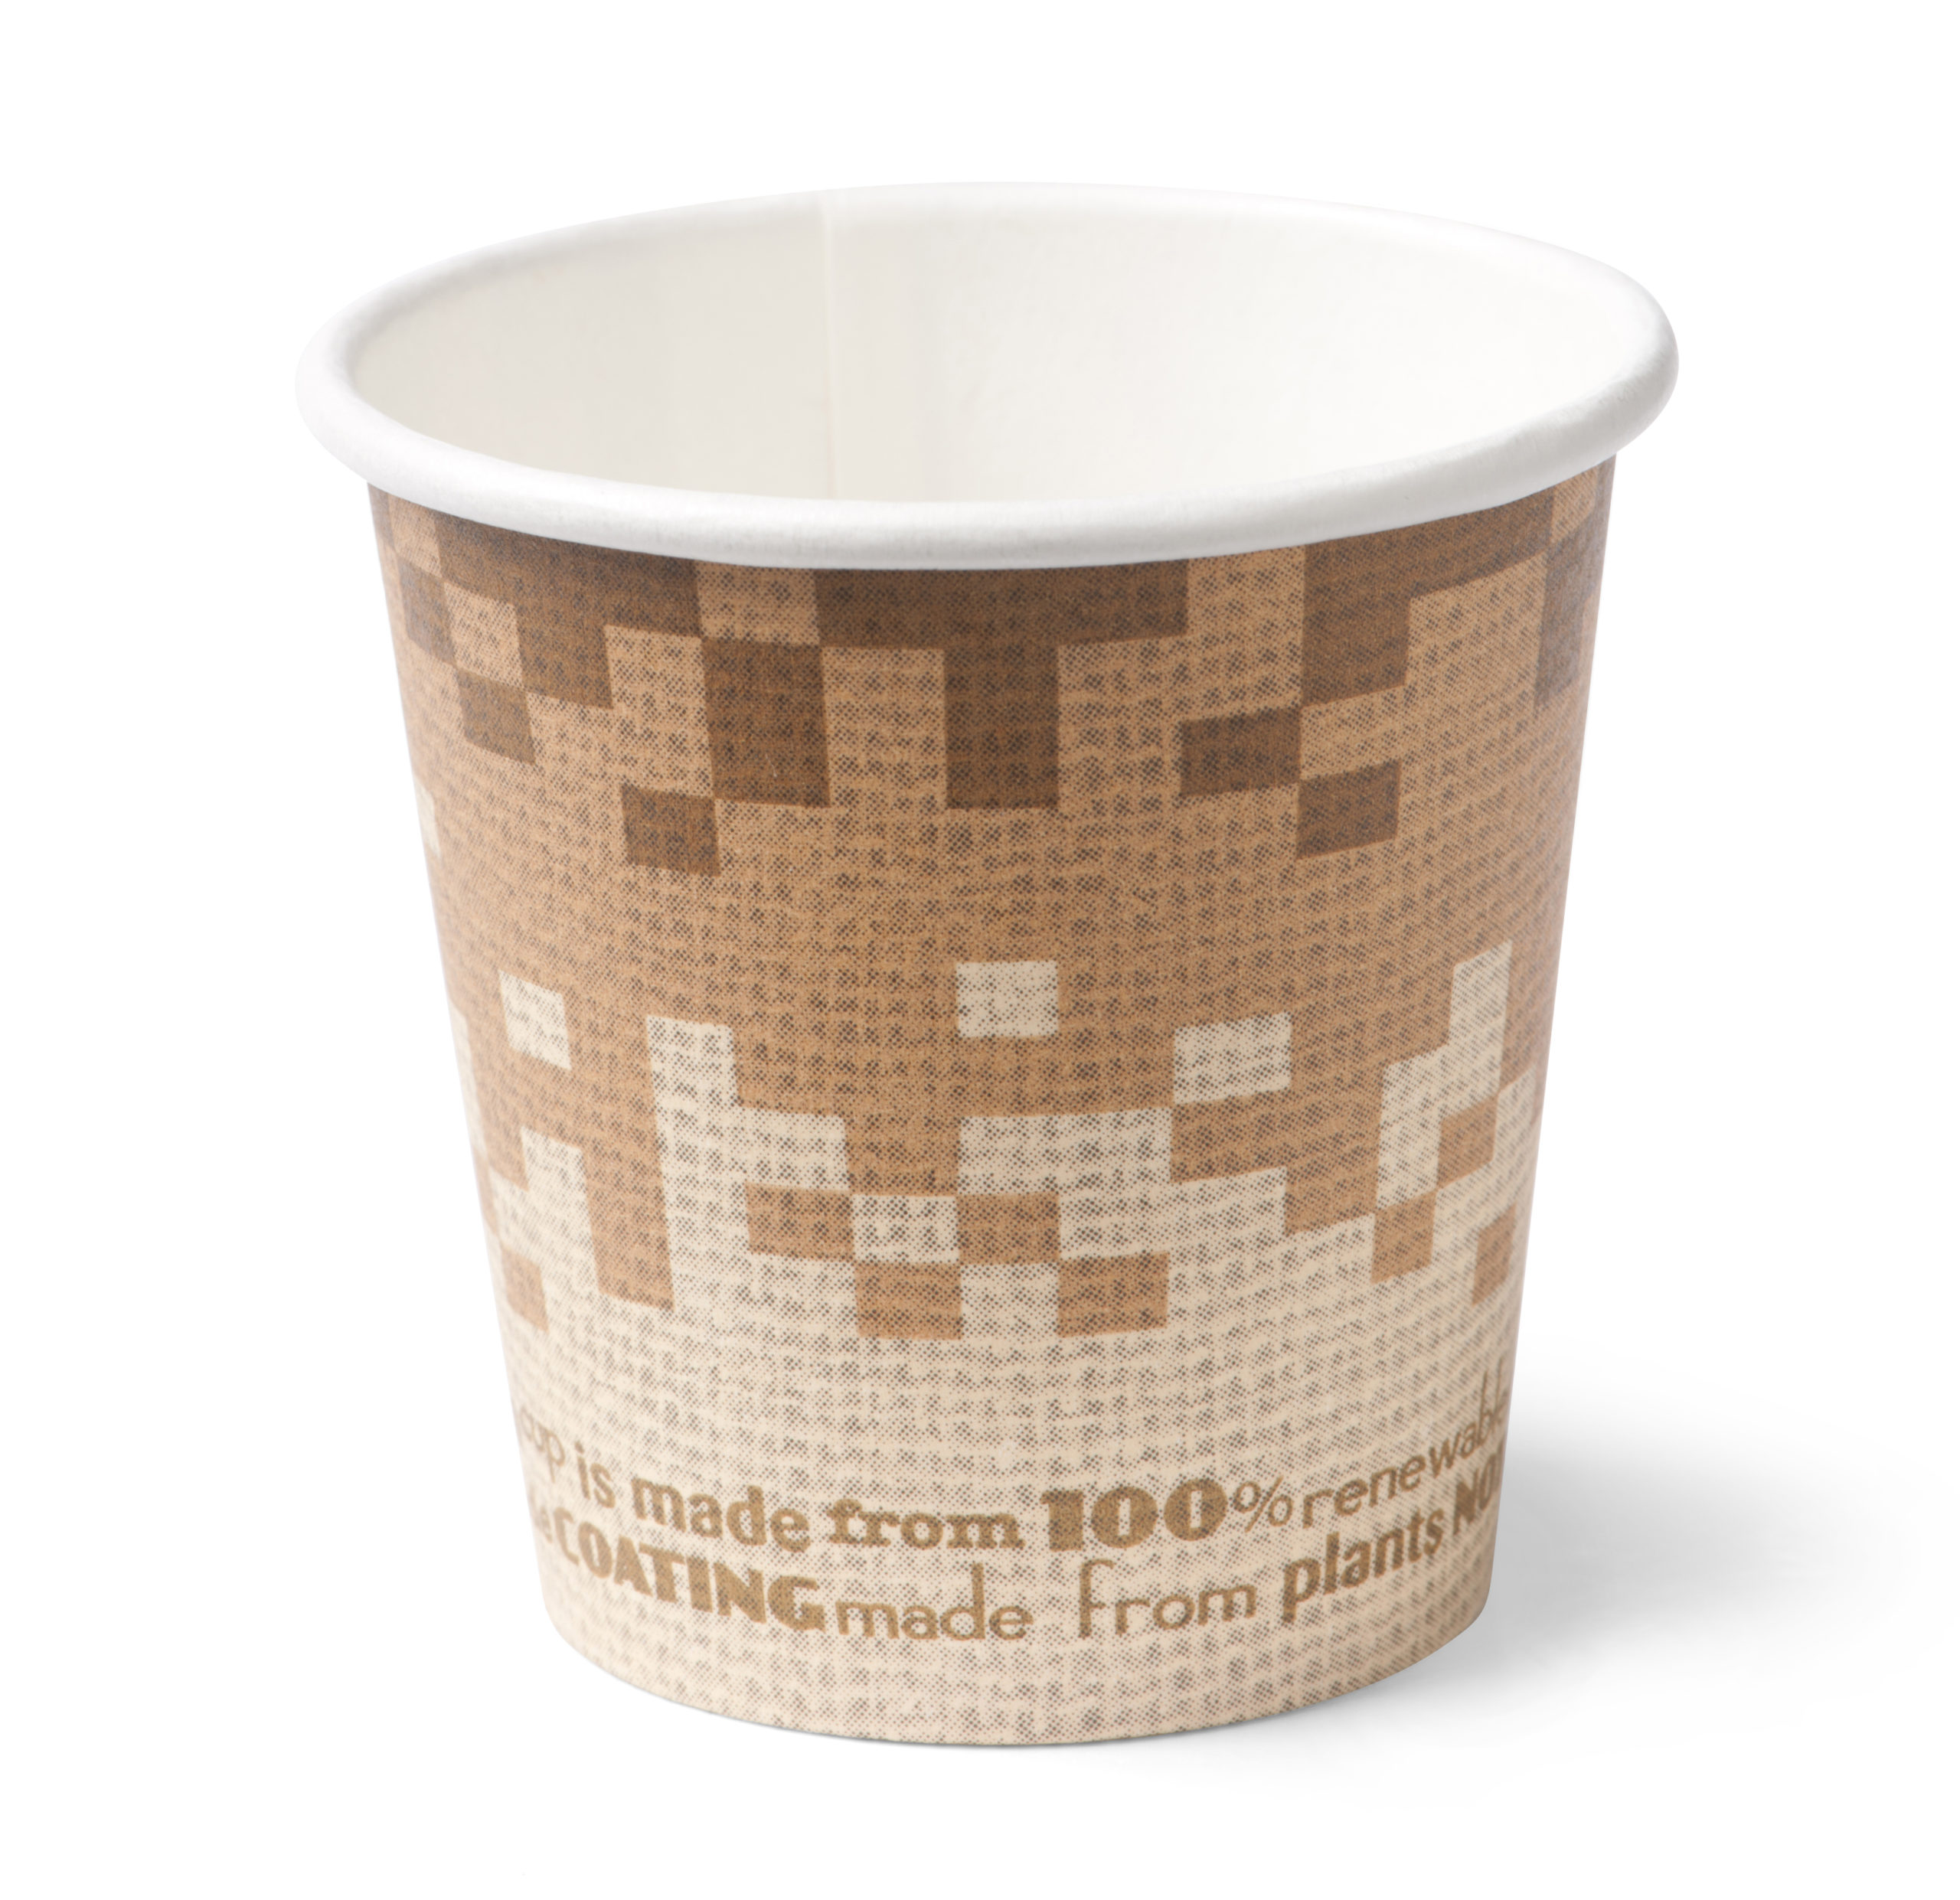 biodore retro verde koffiebekers karton 100ml biologische hot cup scaled